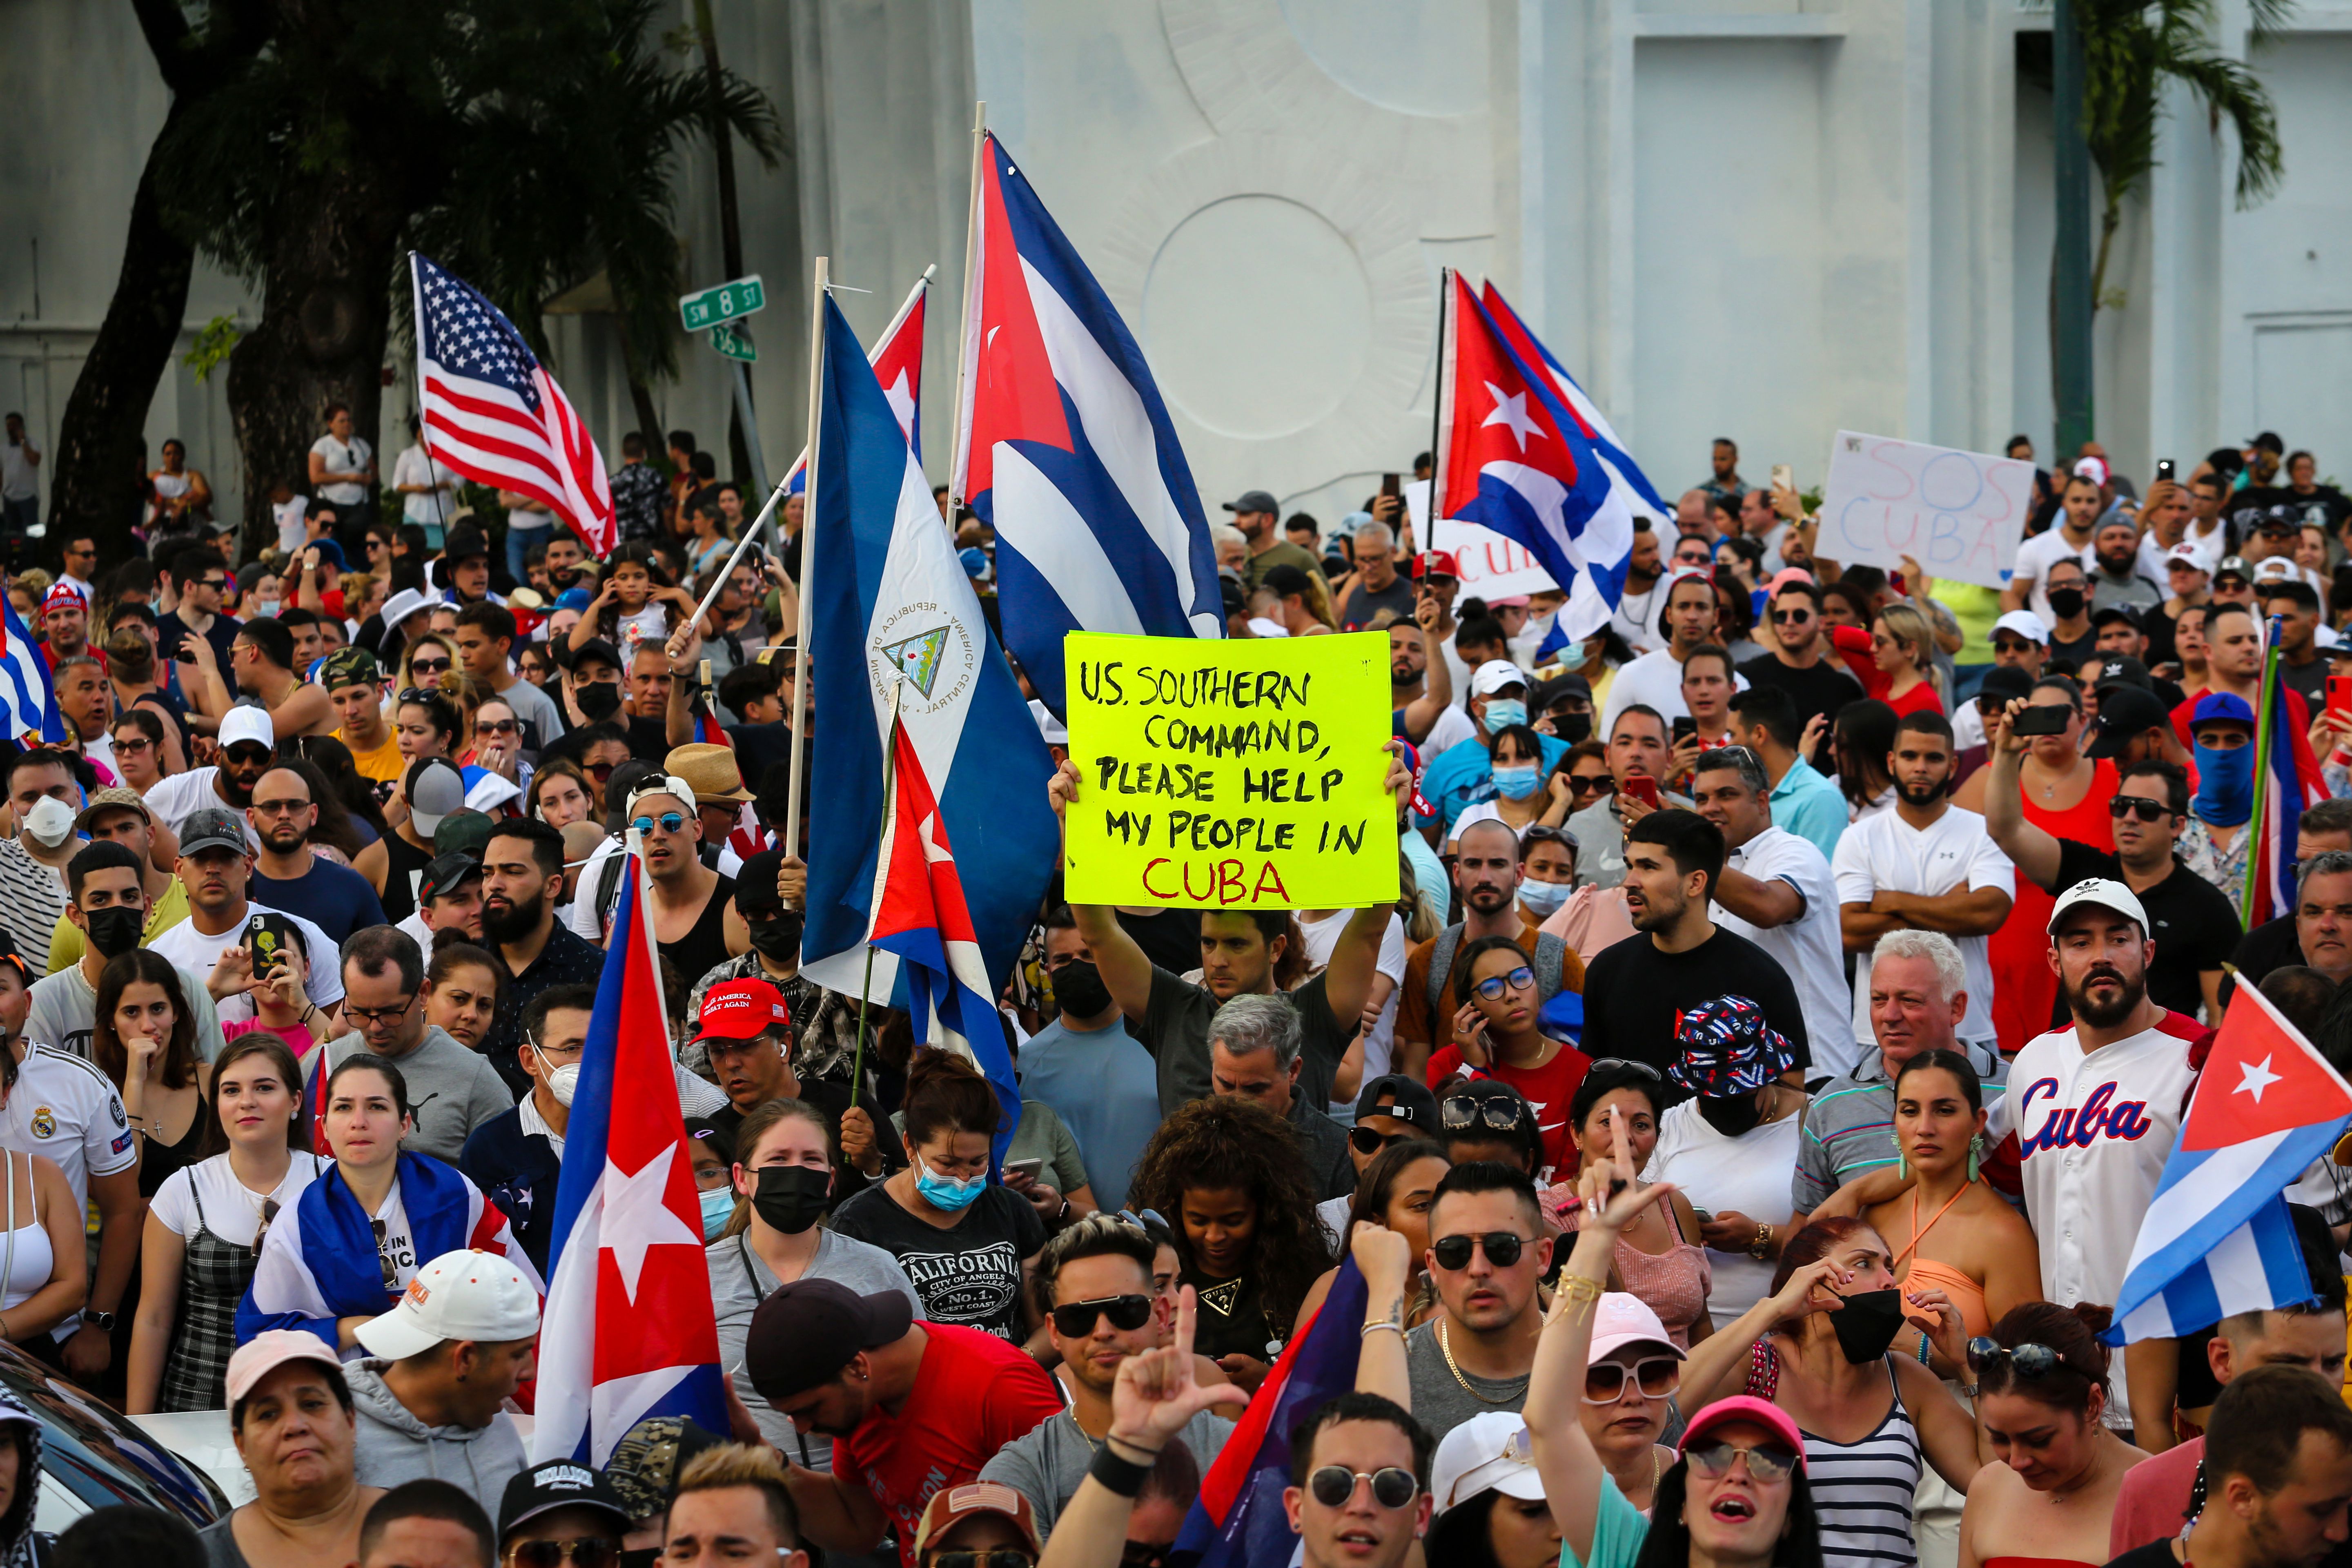 Miles de personas protestan en Cuba contra el gobierno